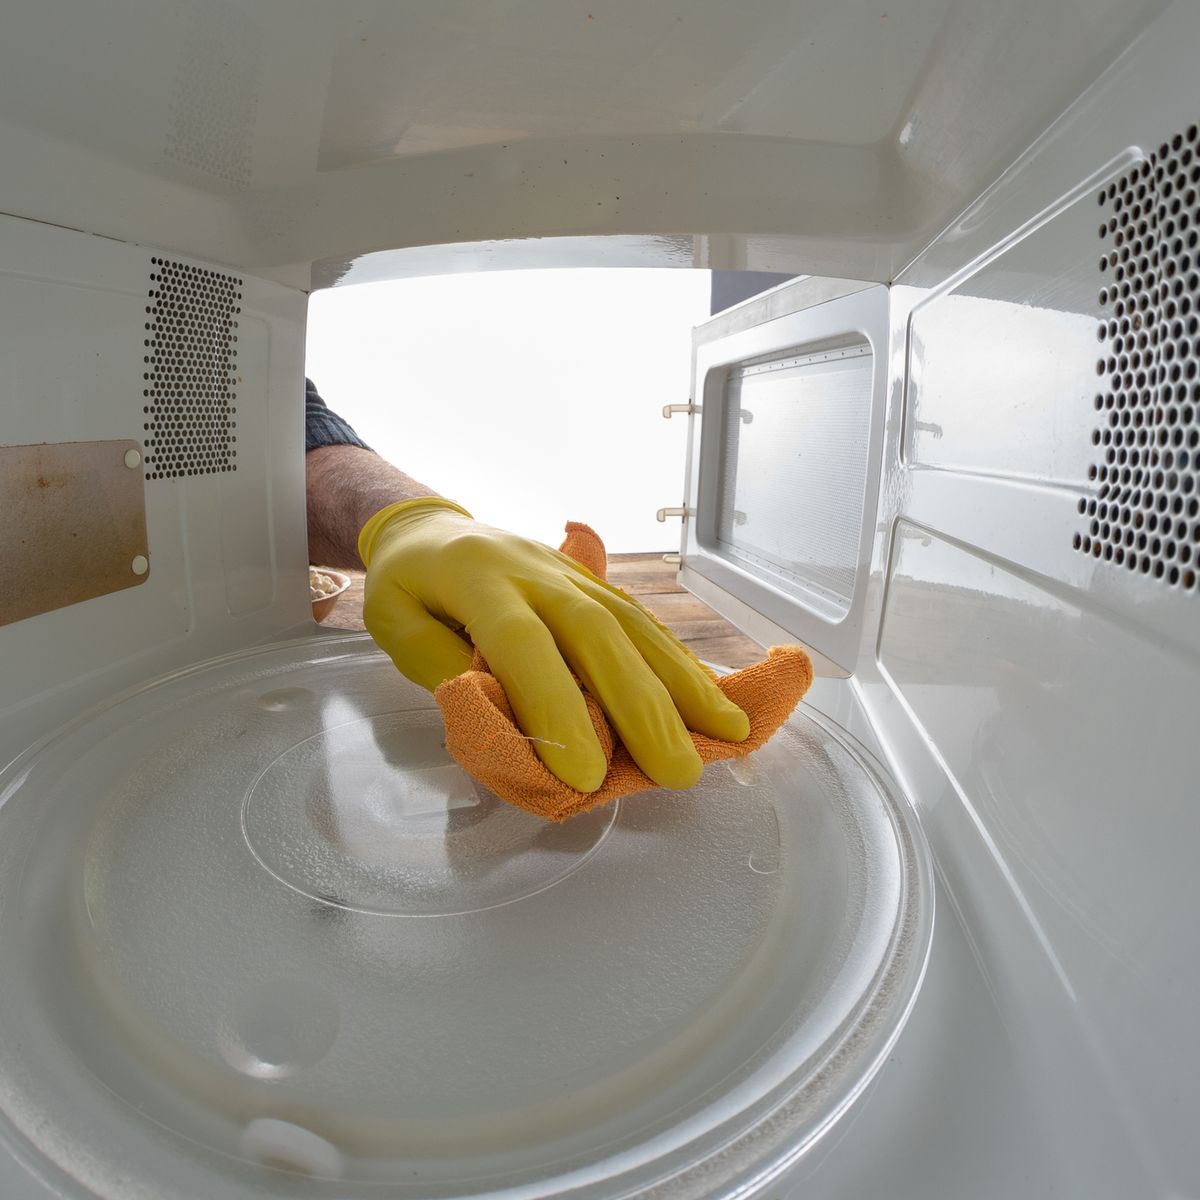 Limpiador de microondas, limpia fácilmente el horno microondas, Limpiador  de vap